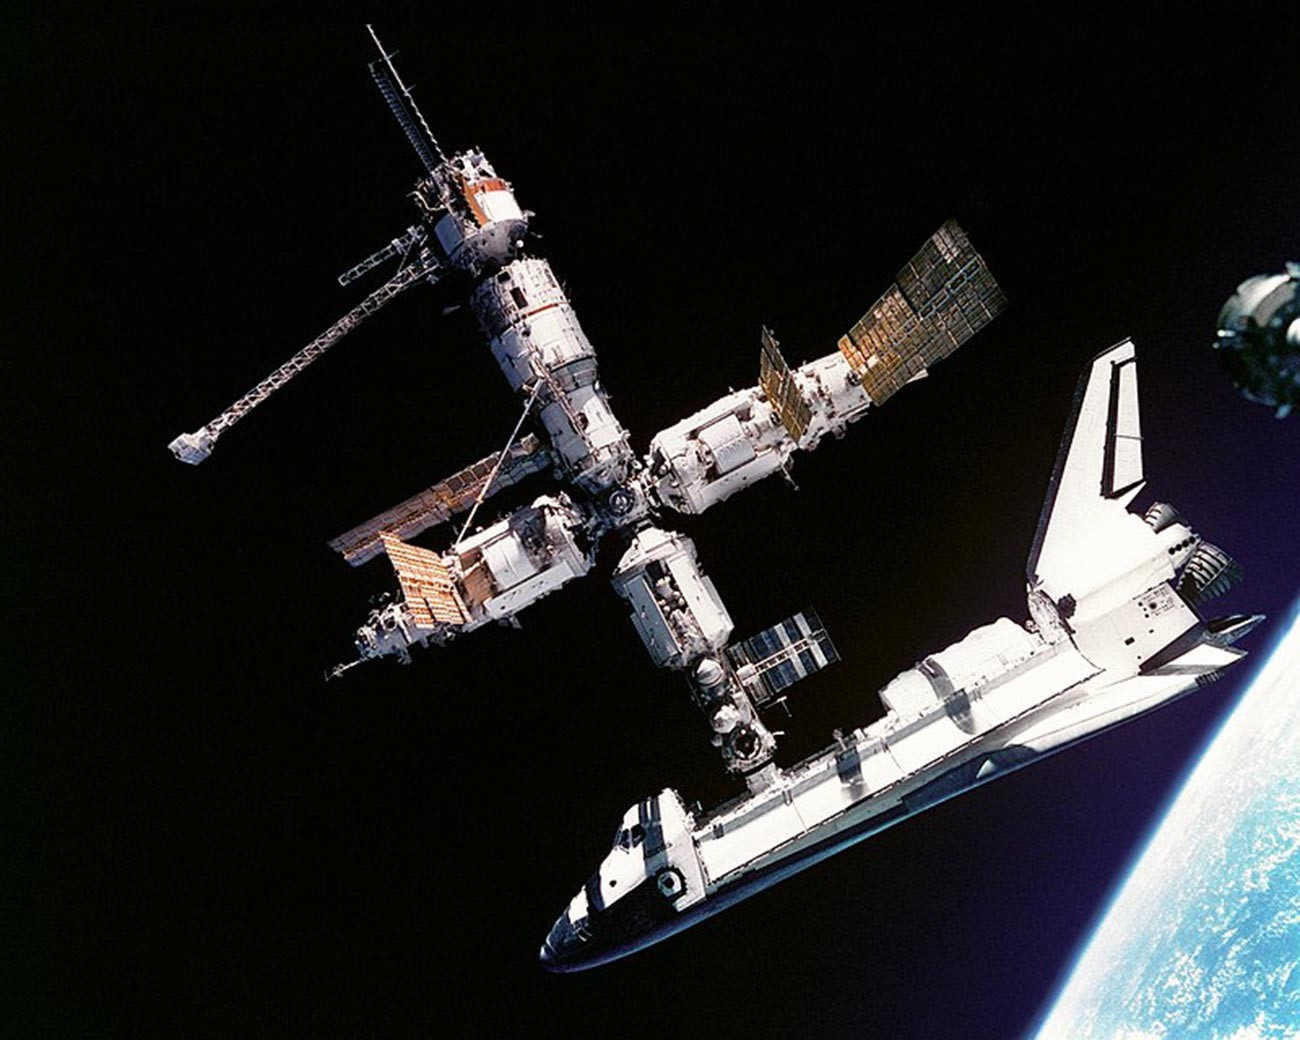 Vista del transbordador espacial Atlantis conectado a la estación espacial rusa Mir, el 4 de julio de 1995.